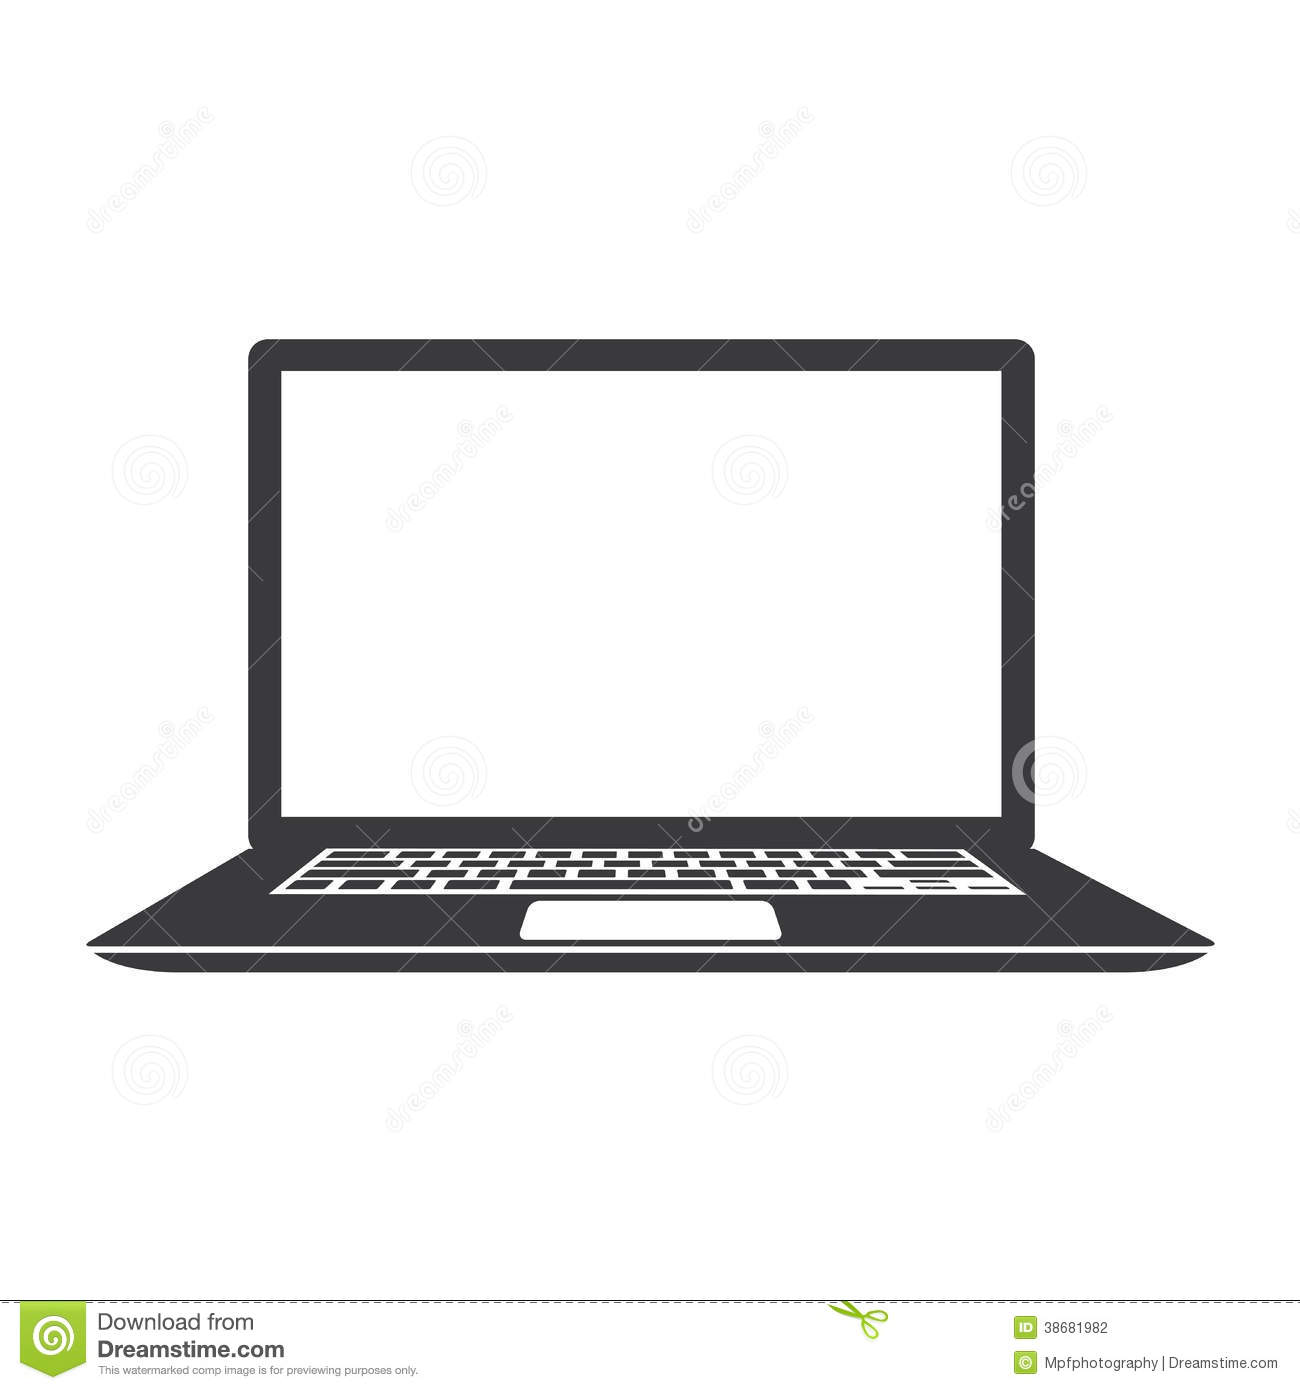 Laptop Icon Black and White